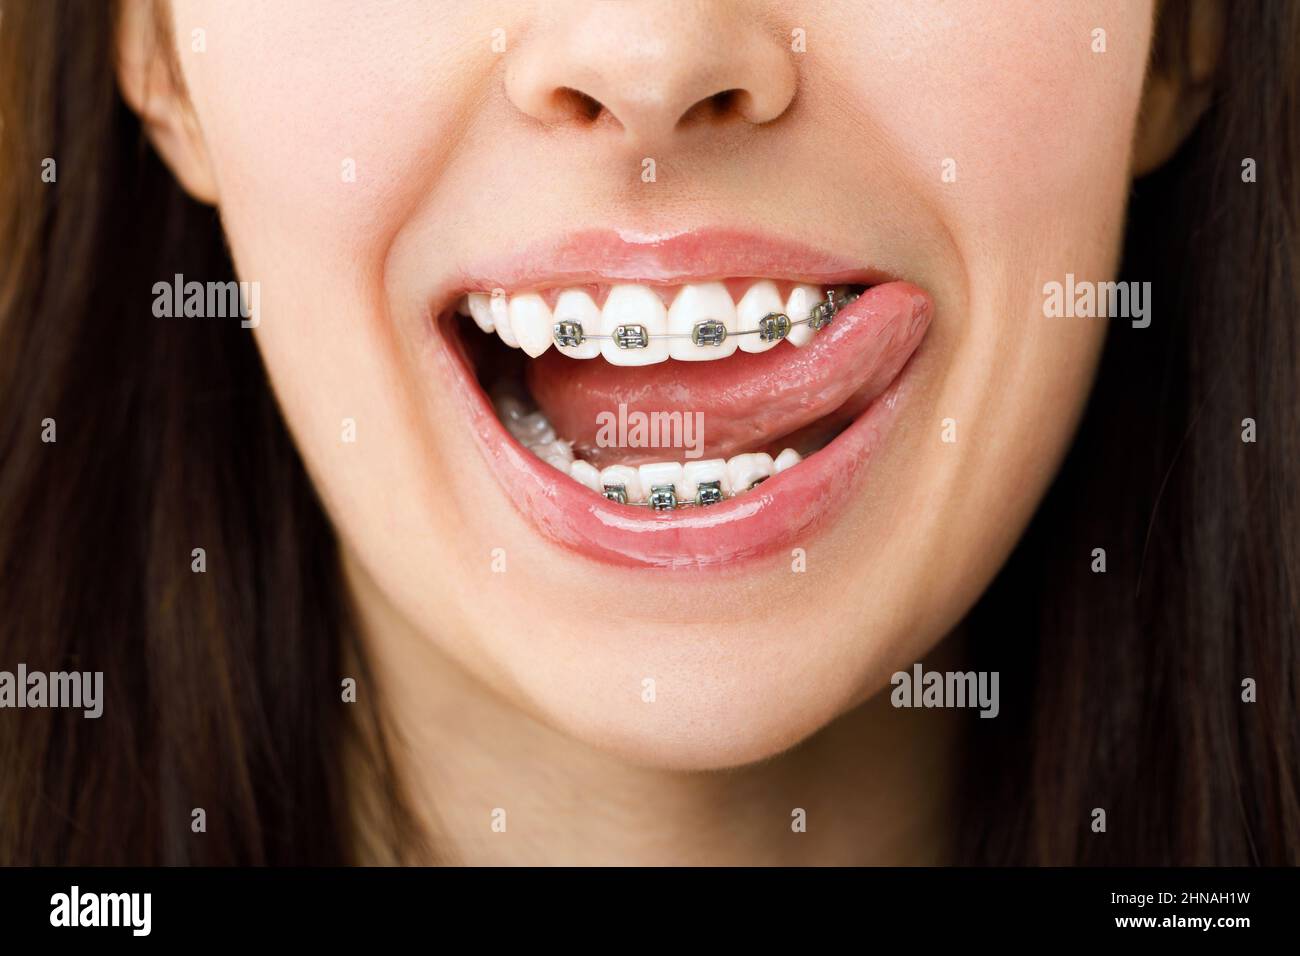 El tratamiento ortodóncico. Concepto de cuidado dental. Mujer hermosa sonrisa saludable de cerca. Closeup cerámica y soportes de metal en los dientes. Hermosa hembra Foto de stock